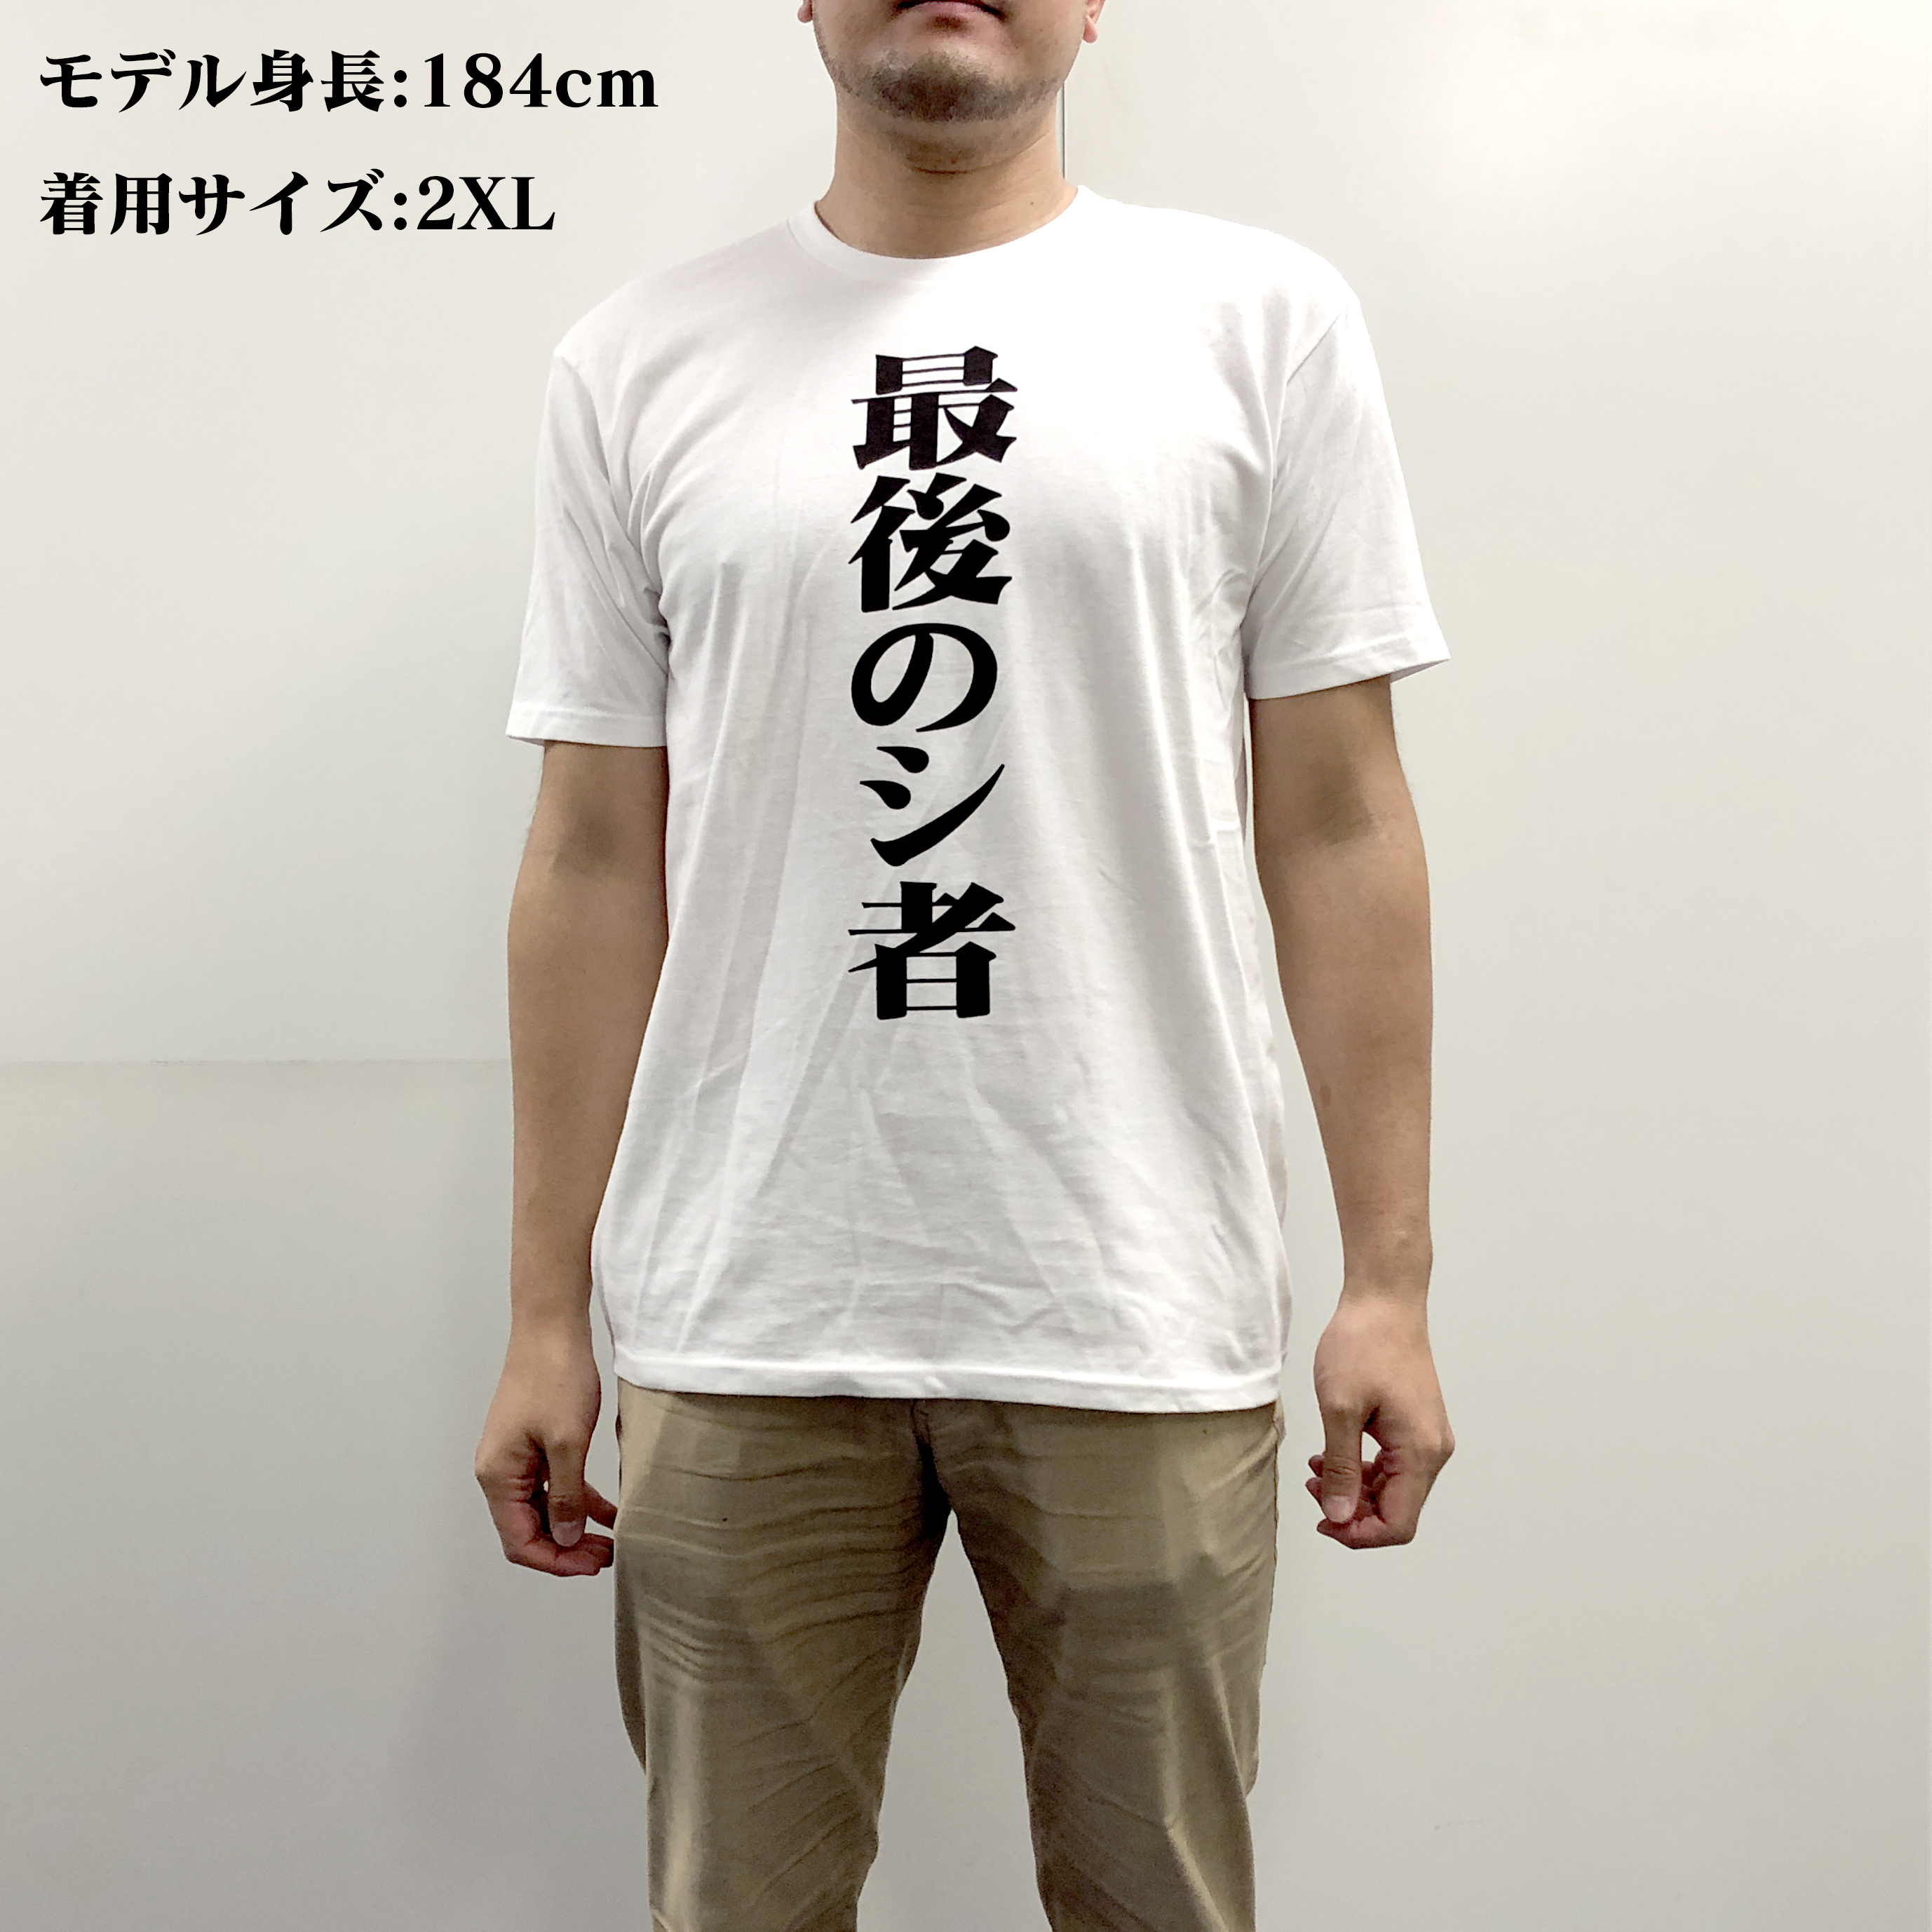 エヴァンゲリオン タイトルビッグプリント Tシャツ Evangelion 2XL-